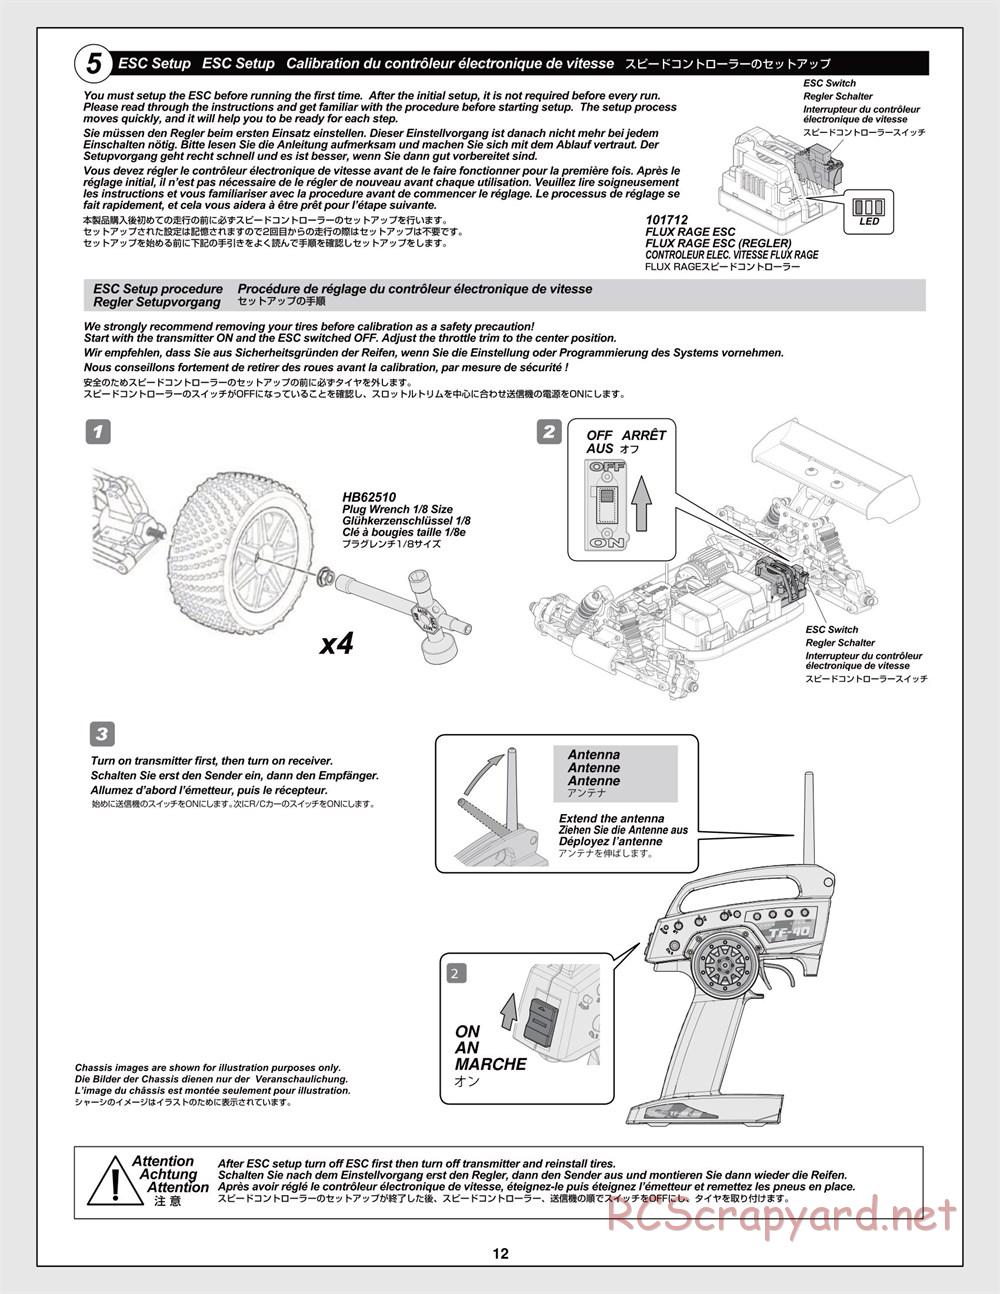 HPI - Trophy Flux Truggy - Manual - Page 12